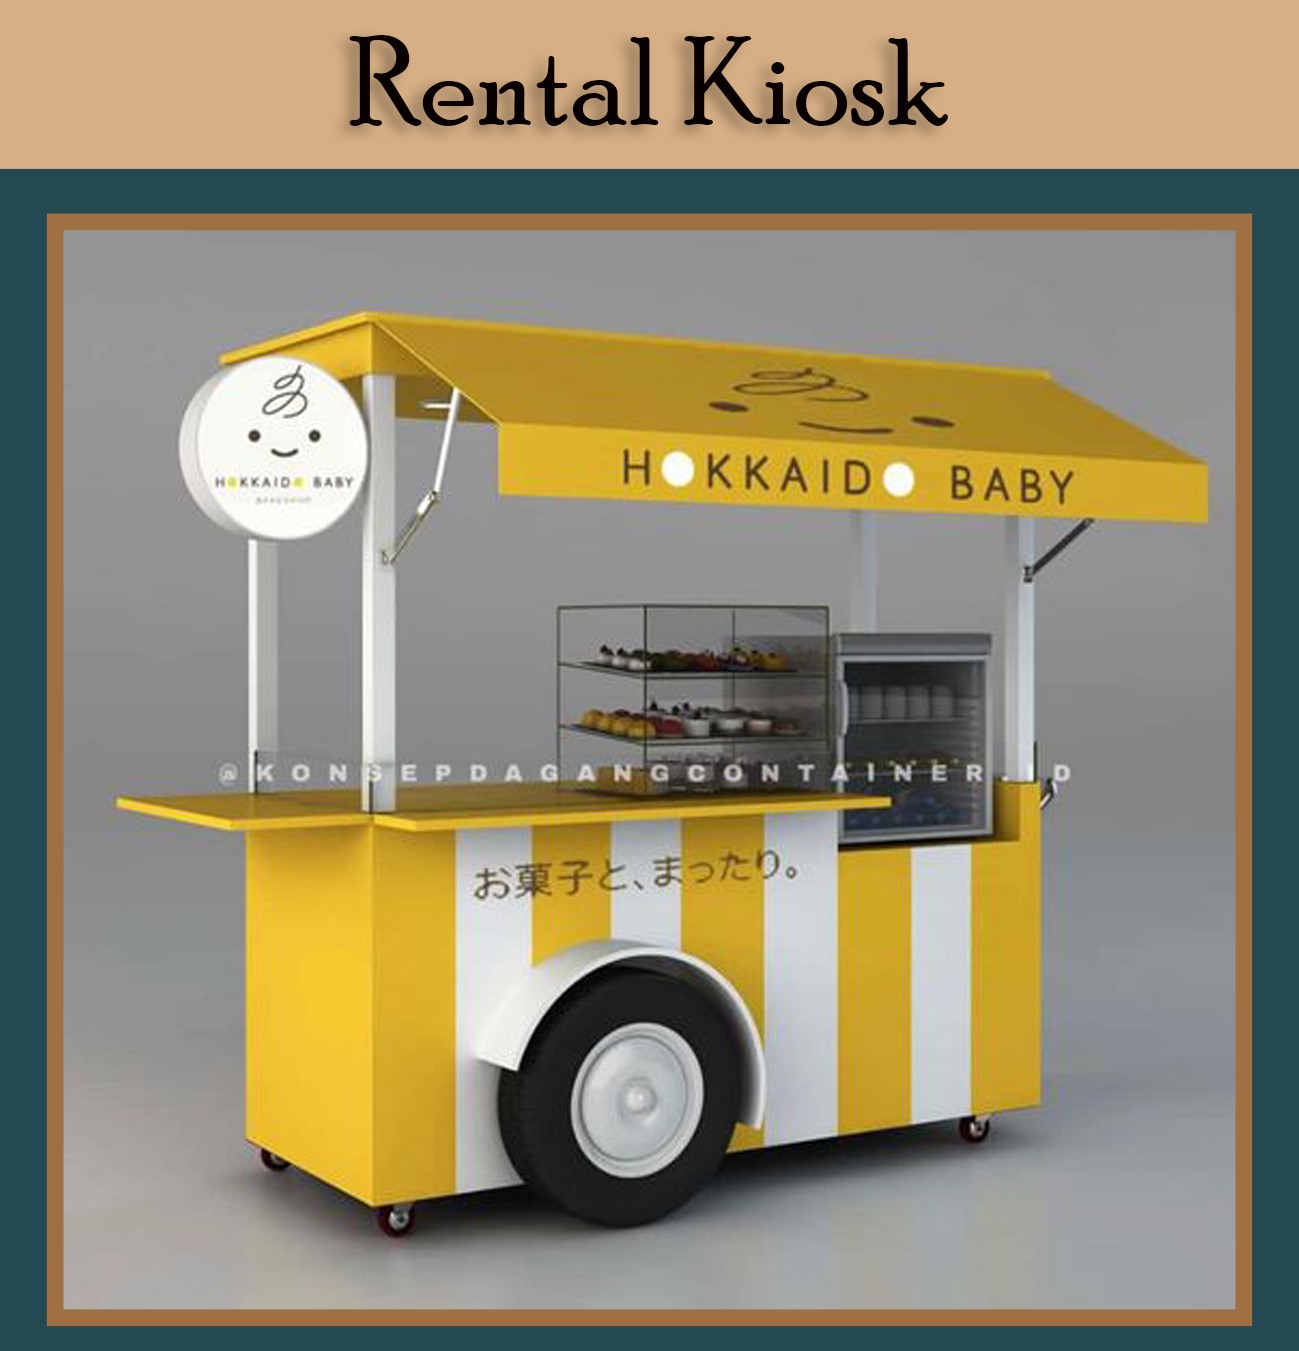 Rental Kiosk ads2.jpg